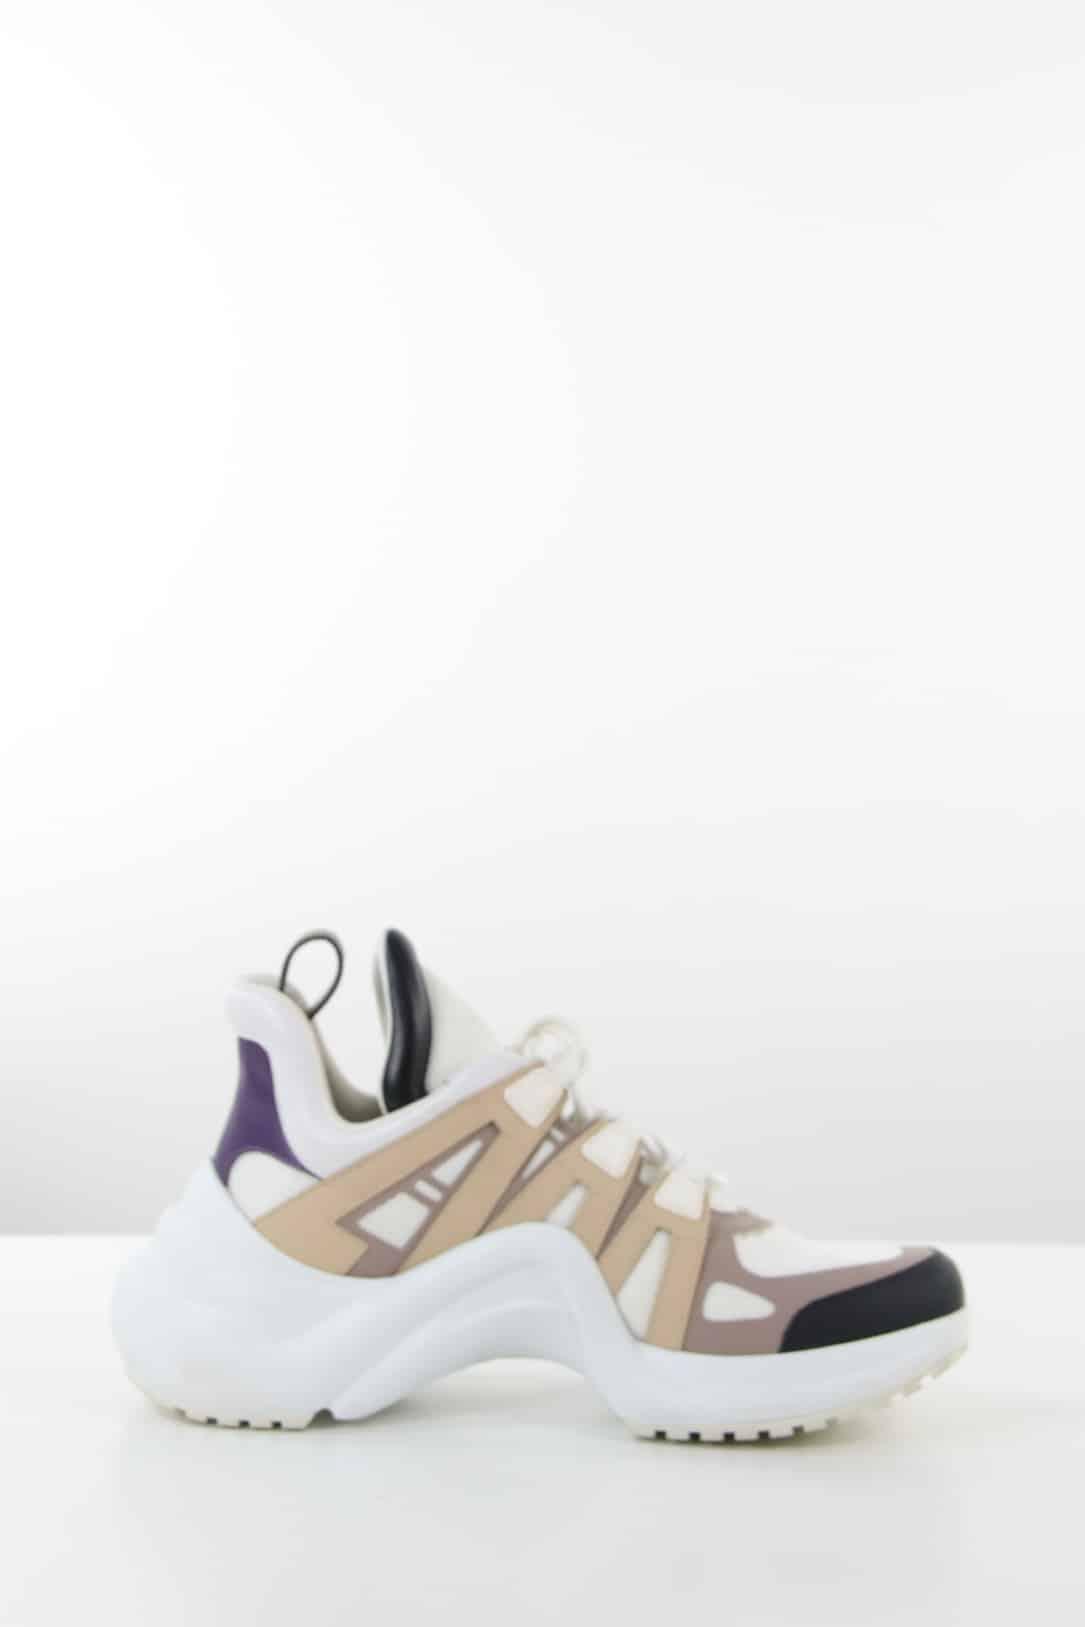 Baskets Louis Vuitton de seconde main pour Femme